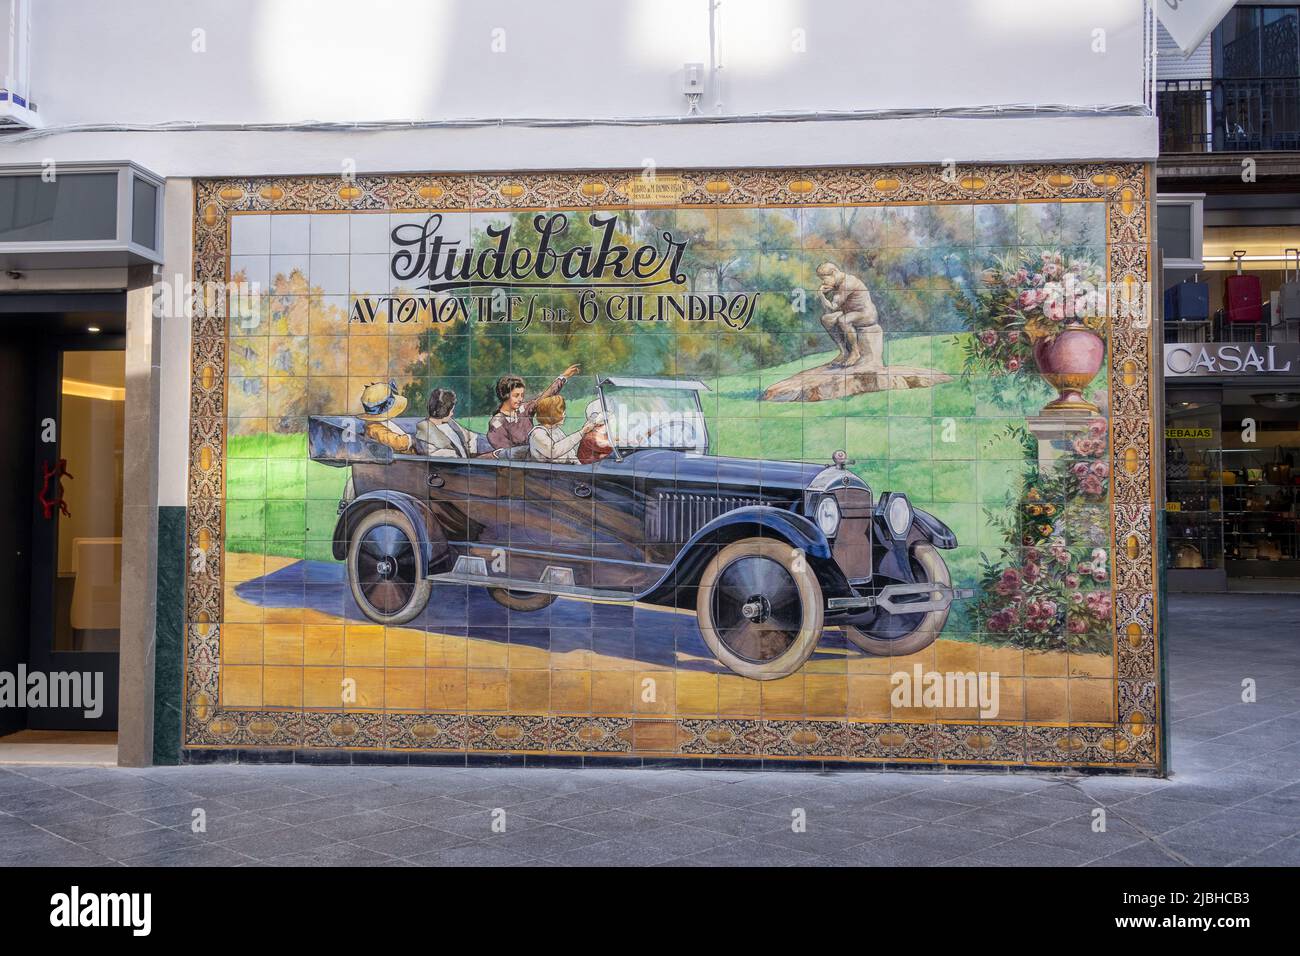 Keramikfliesen Werbung Für Studebaker Automobiles In Der Tetuan Straße, Calle Tetuán Sevilla Spanien Hergestellt Im Jahr 1924 Von Enrique Orce Mármol In Der Manue Gemacht Stockfoto